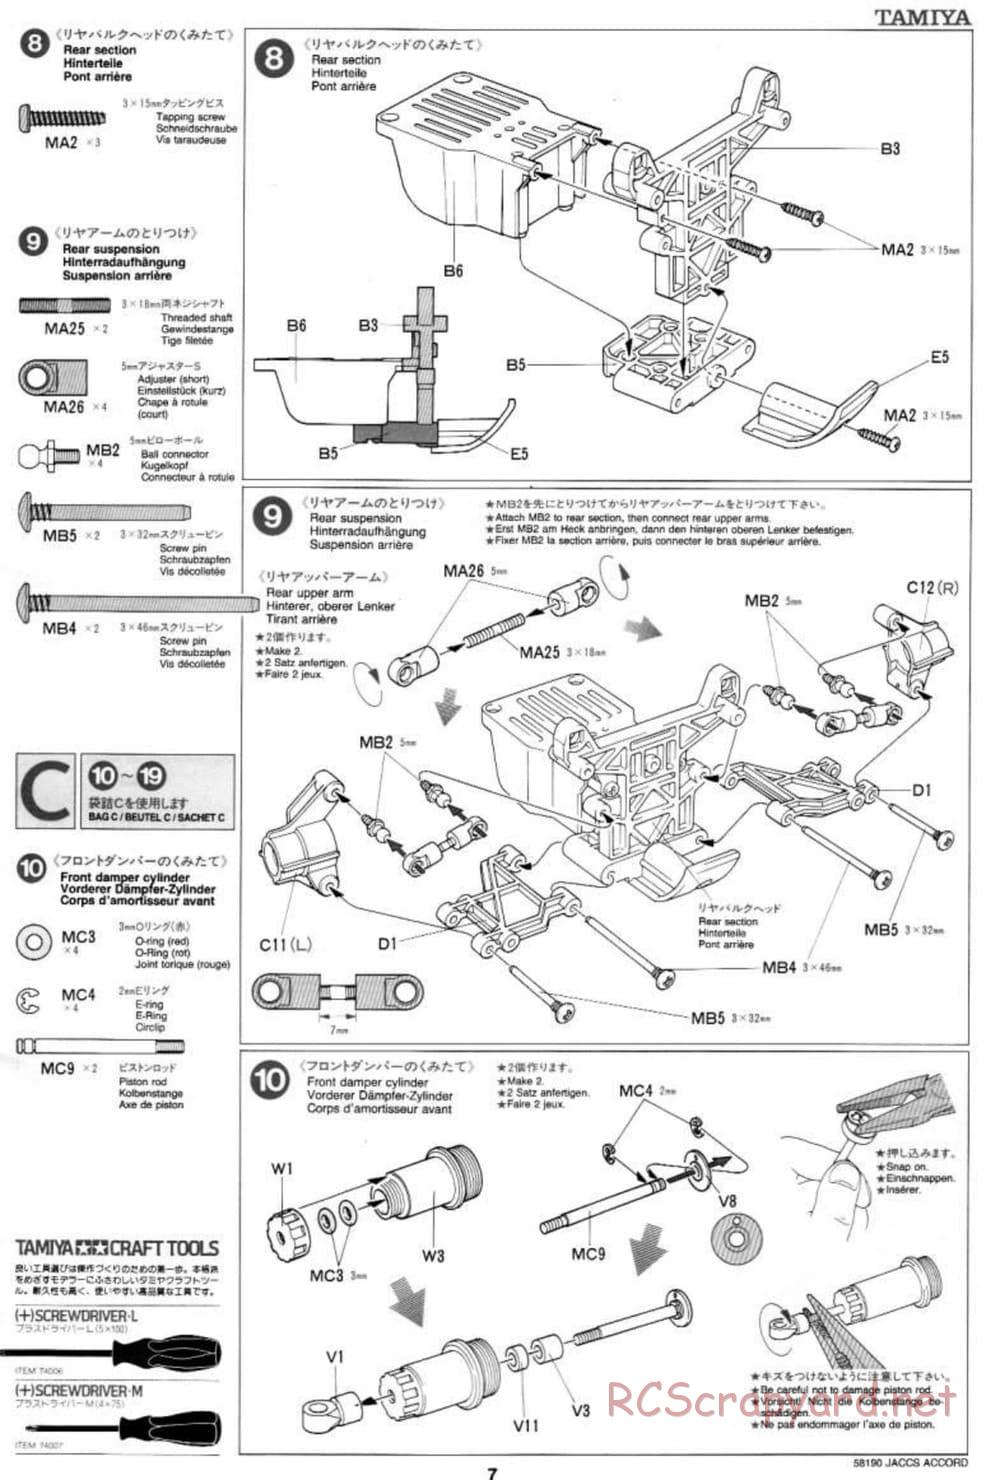 Tamiya - JACCS Honda Accord - FF-01 Chassis - Manual - Page 7